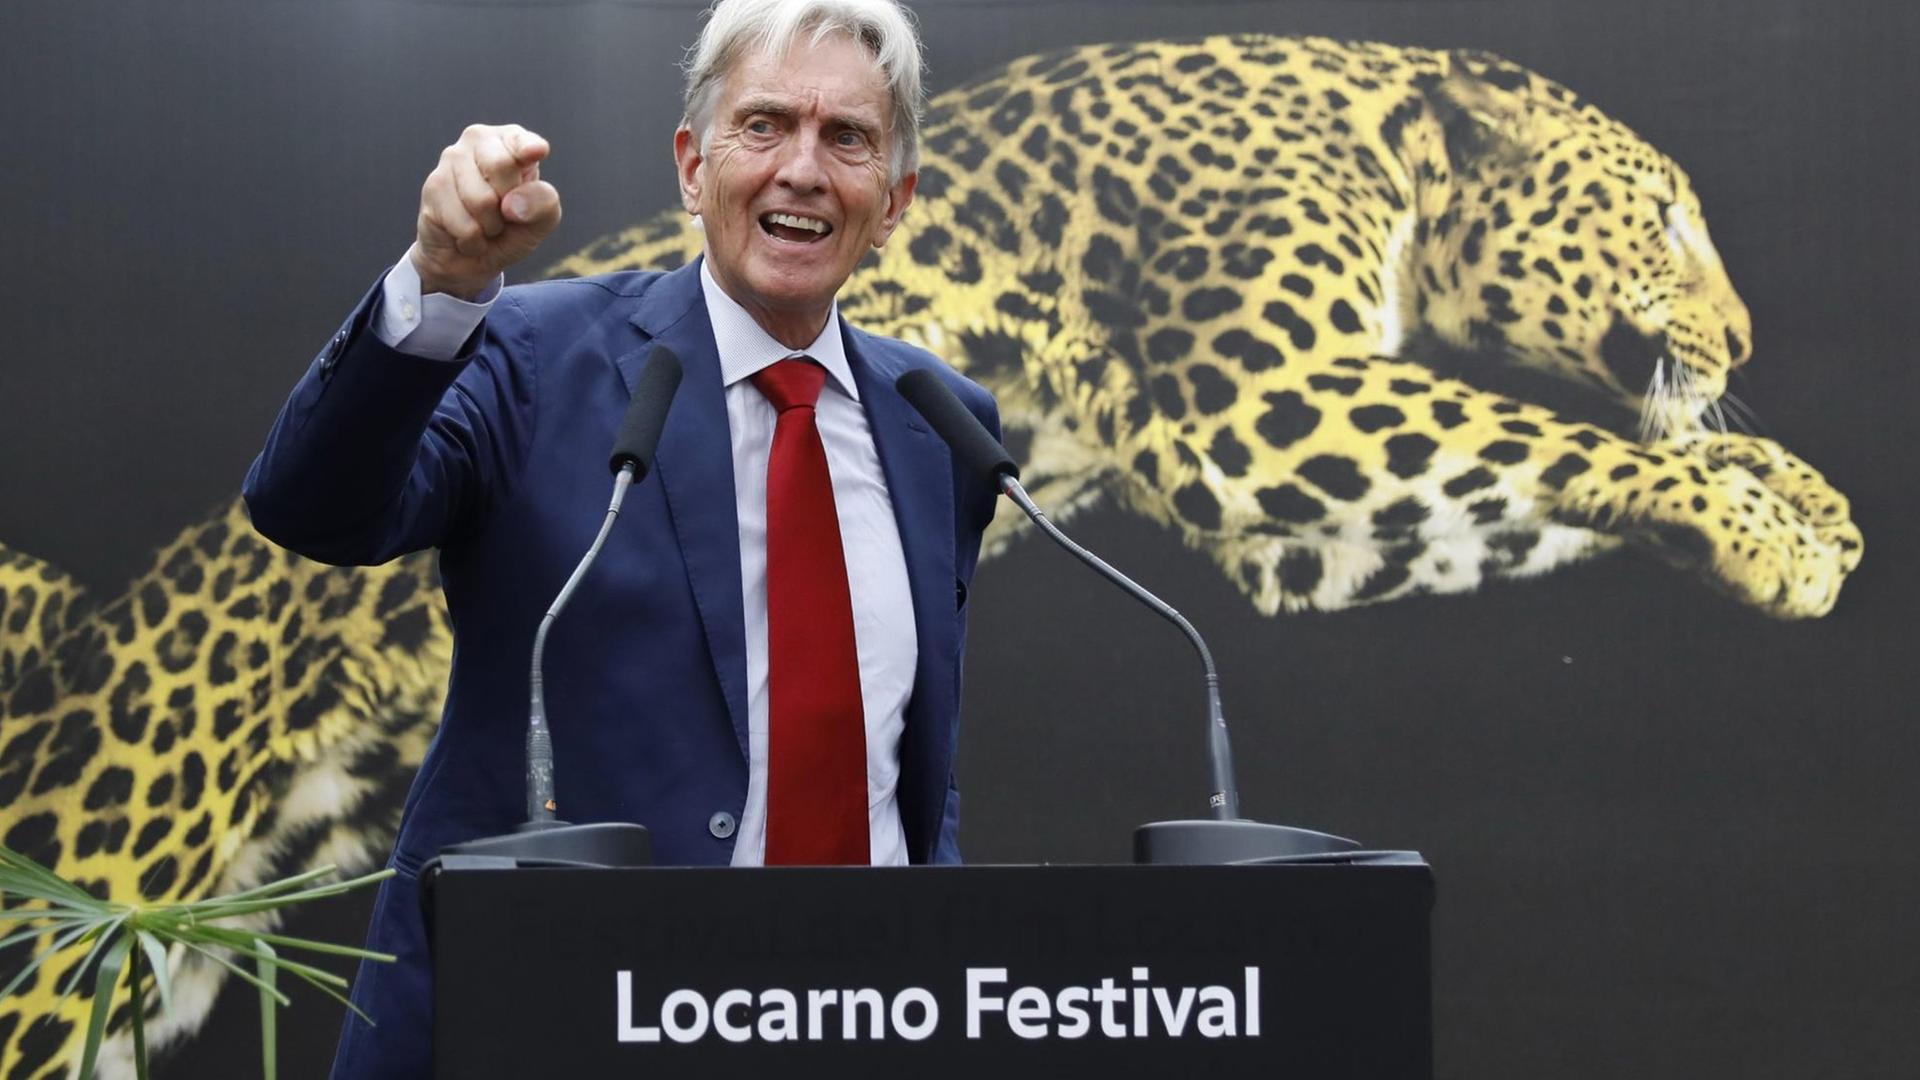 Festivalpräsident Marco Solari bei der offiziellen Eröffnung des 71. Internationalen Filmfestivals von Locarno